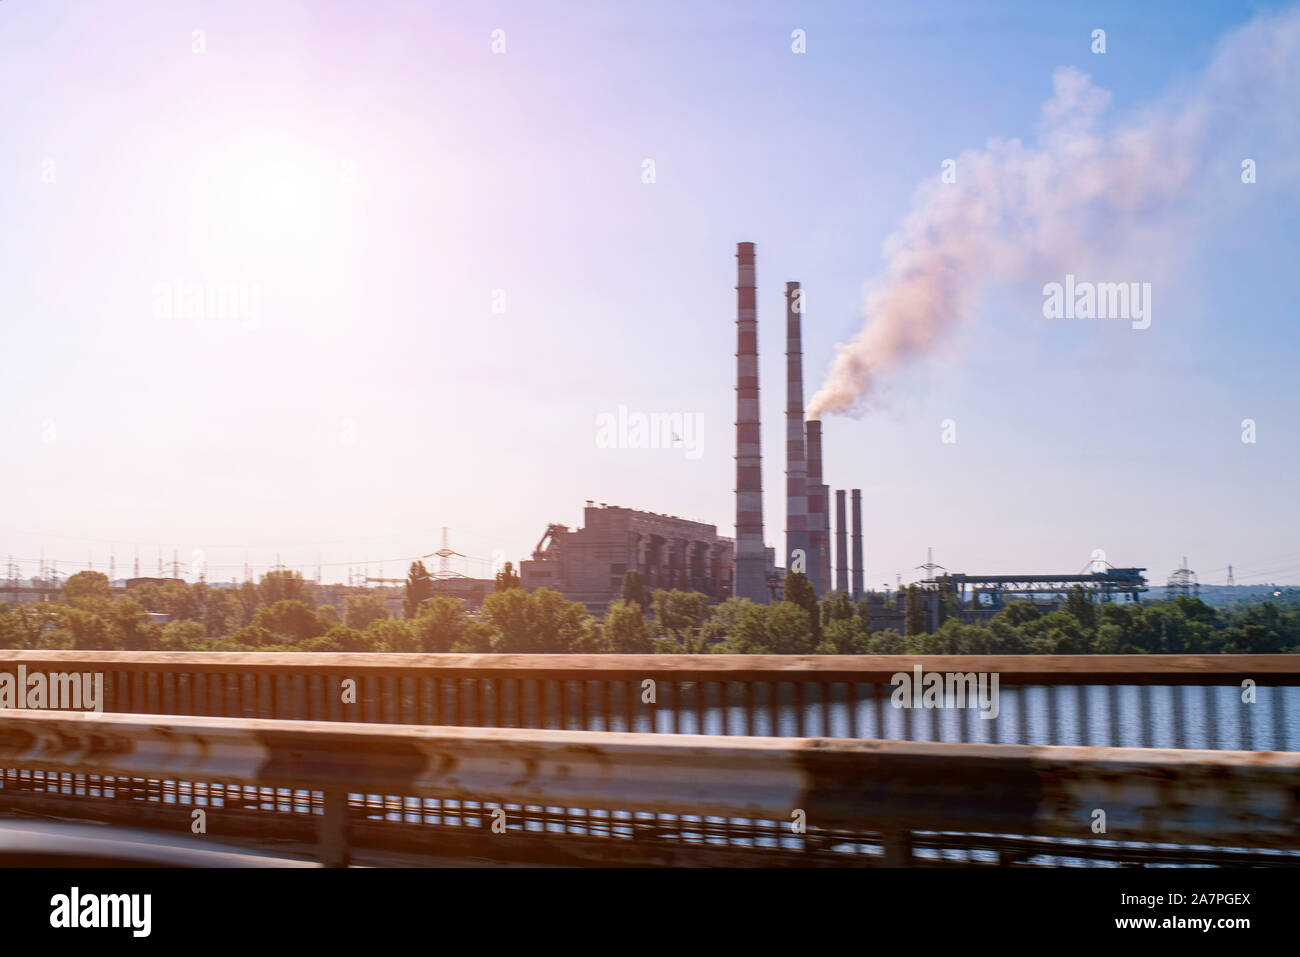 Catastrofe ambientale.L'impianto emette fumo e smog dalle tubazioni a nebbia nuvoloso.industria chimica contro il cielo. Foto Stock